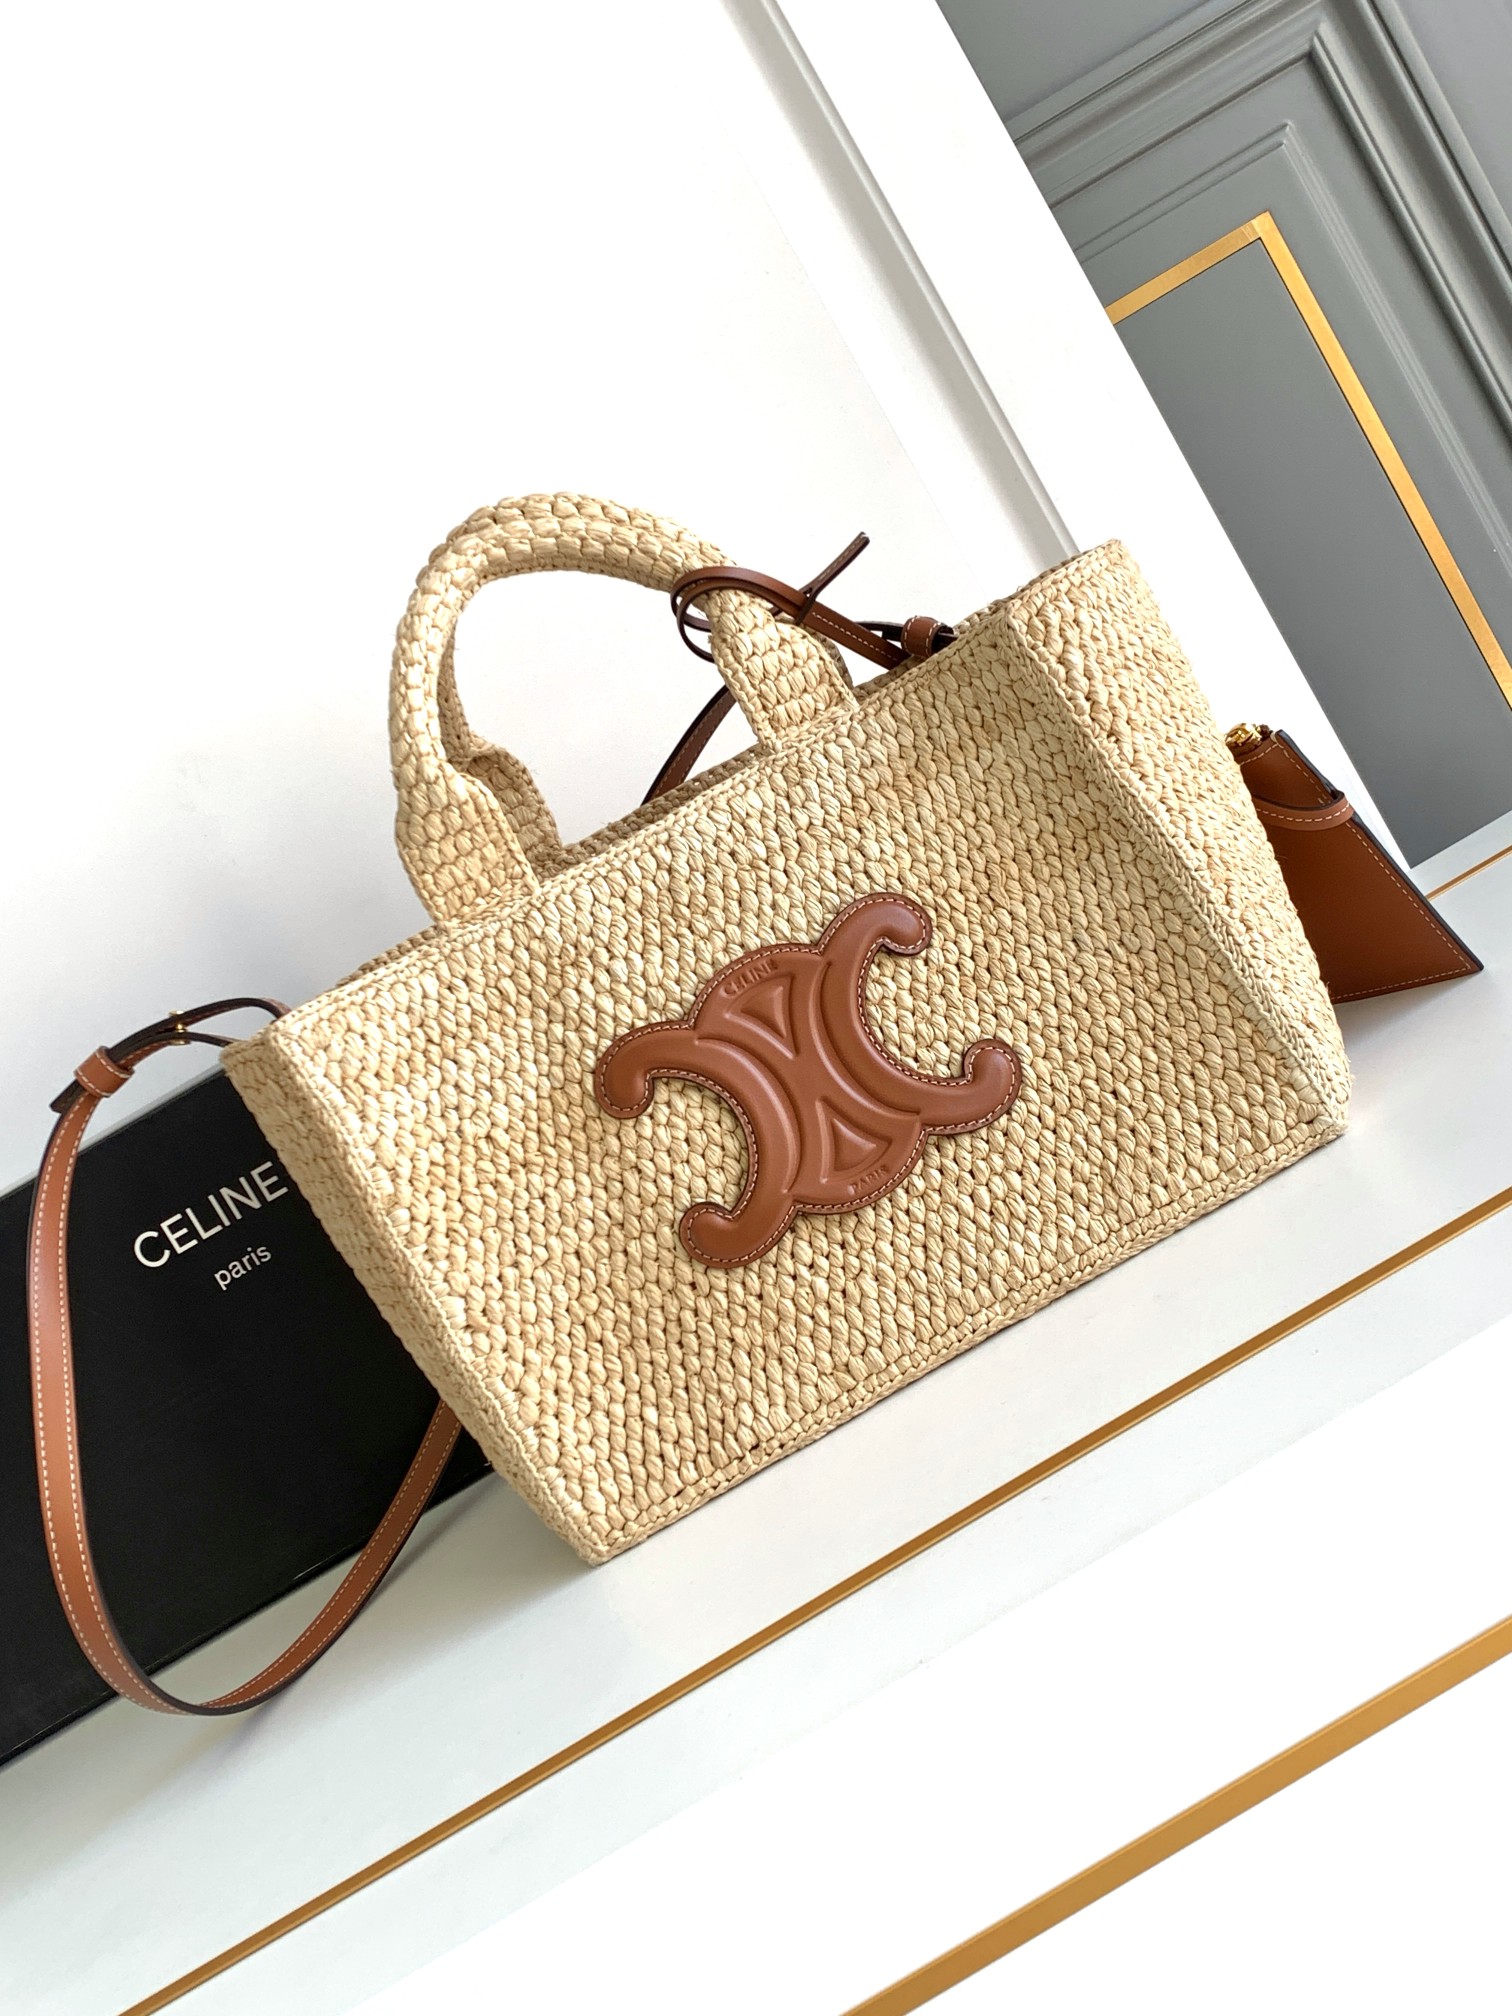 Celine Handtaschen Mini-Taschen Gold Weben Rindsleder Stroh gewebt Sommerkollektion Cabas Thais